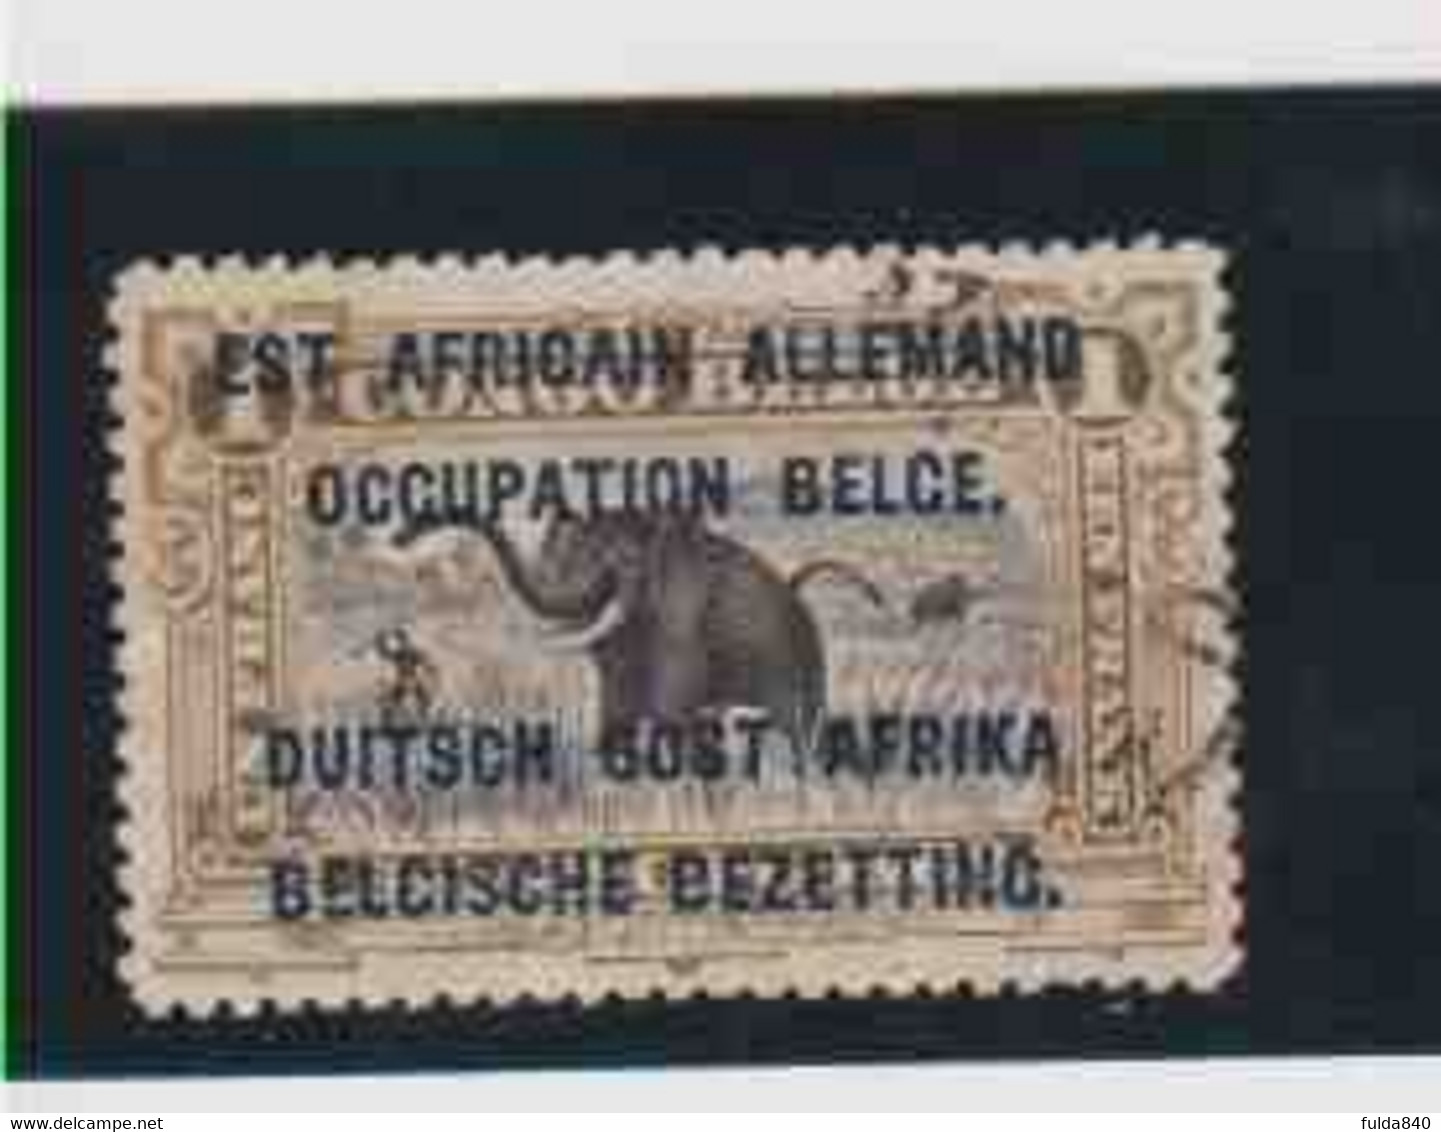 RUANDA-URUNDI. (OBP-COB) 1916 - N°34  *Est Africain Allemand, Occupation Belge*   1F.  Obli  () - Usados